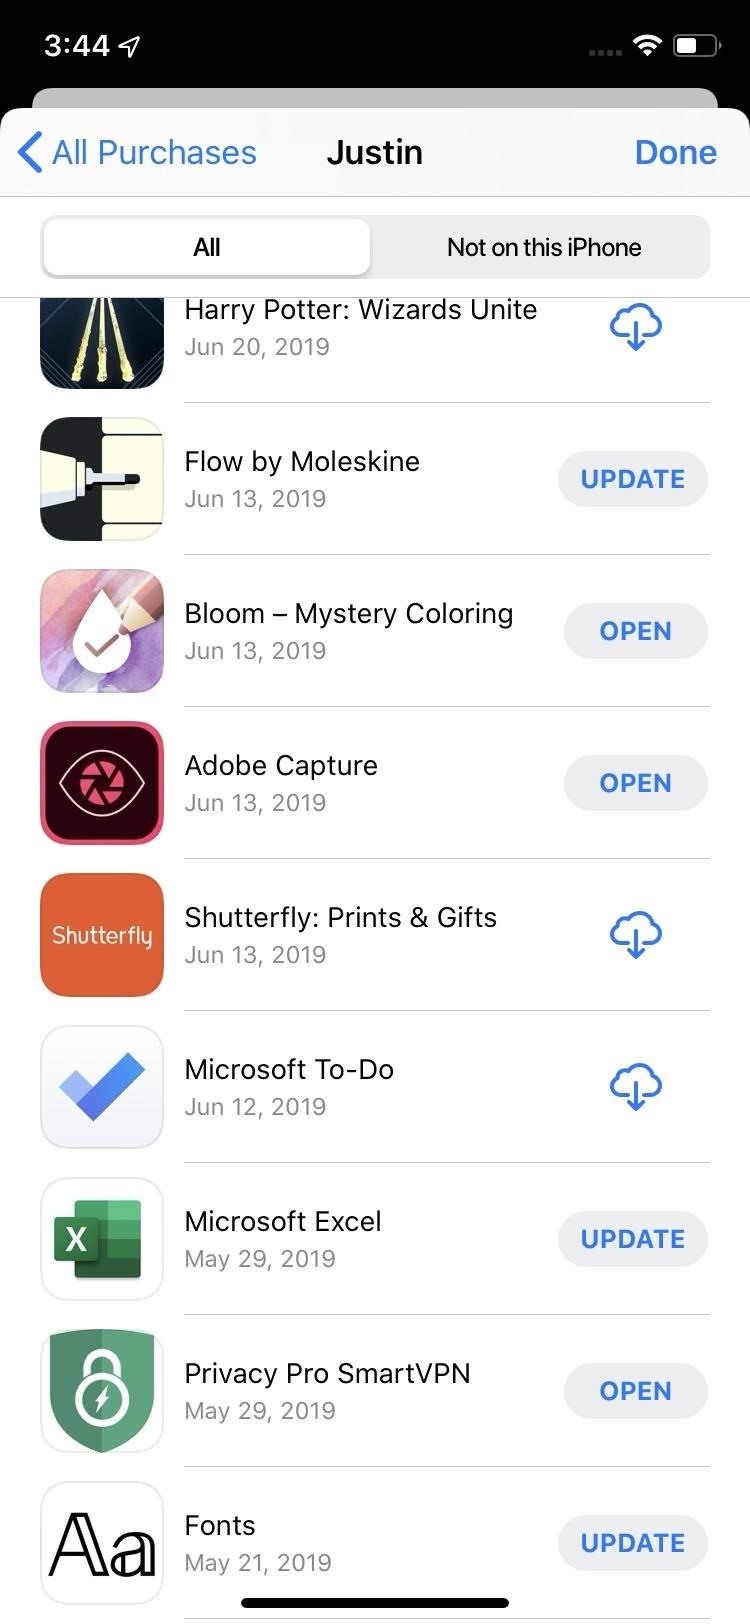 app store update download